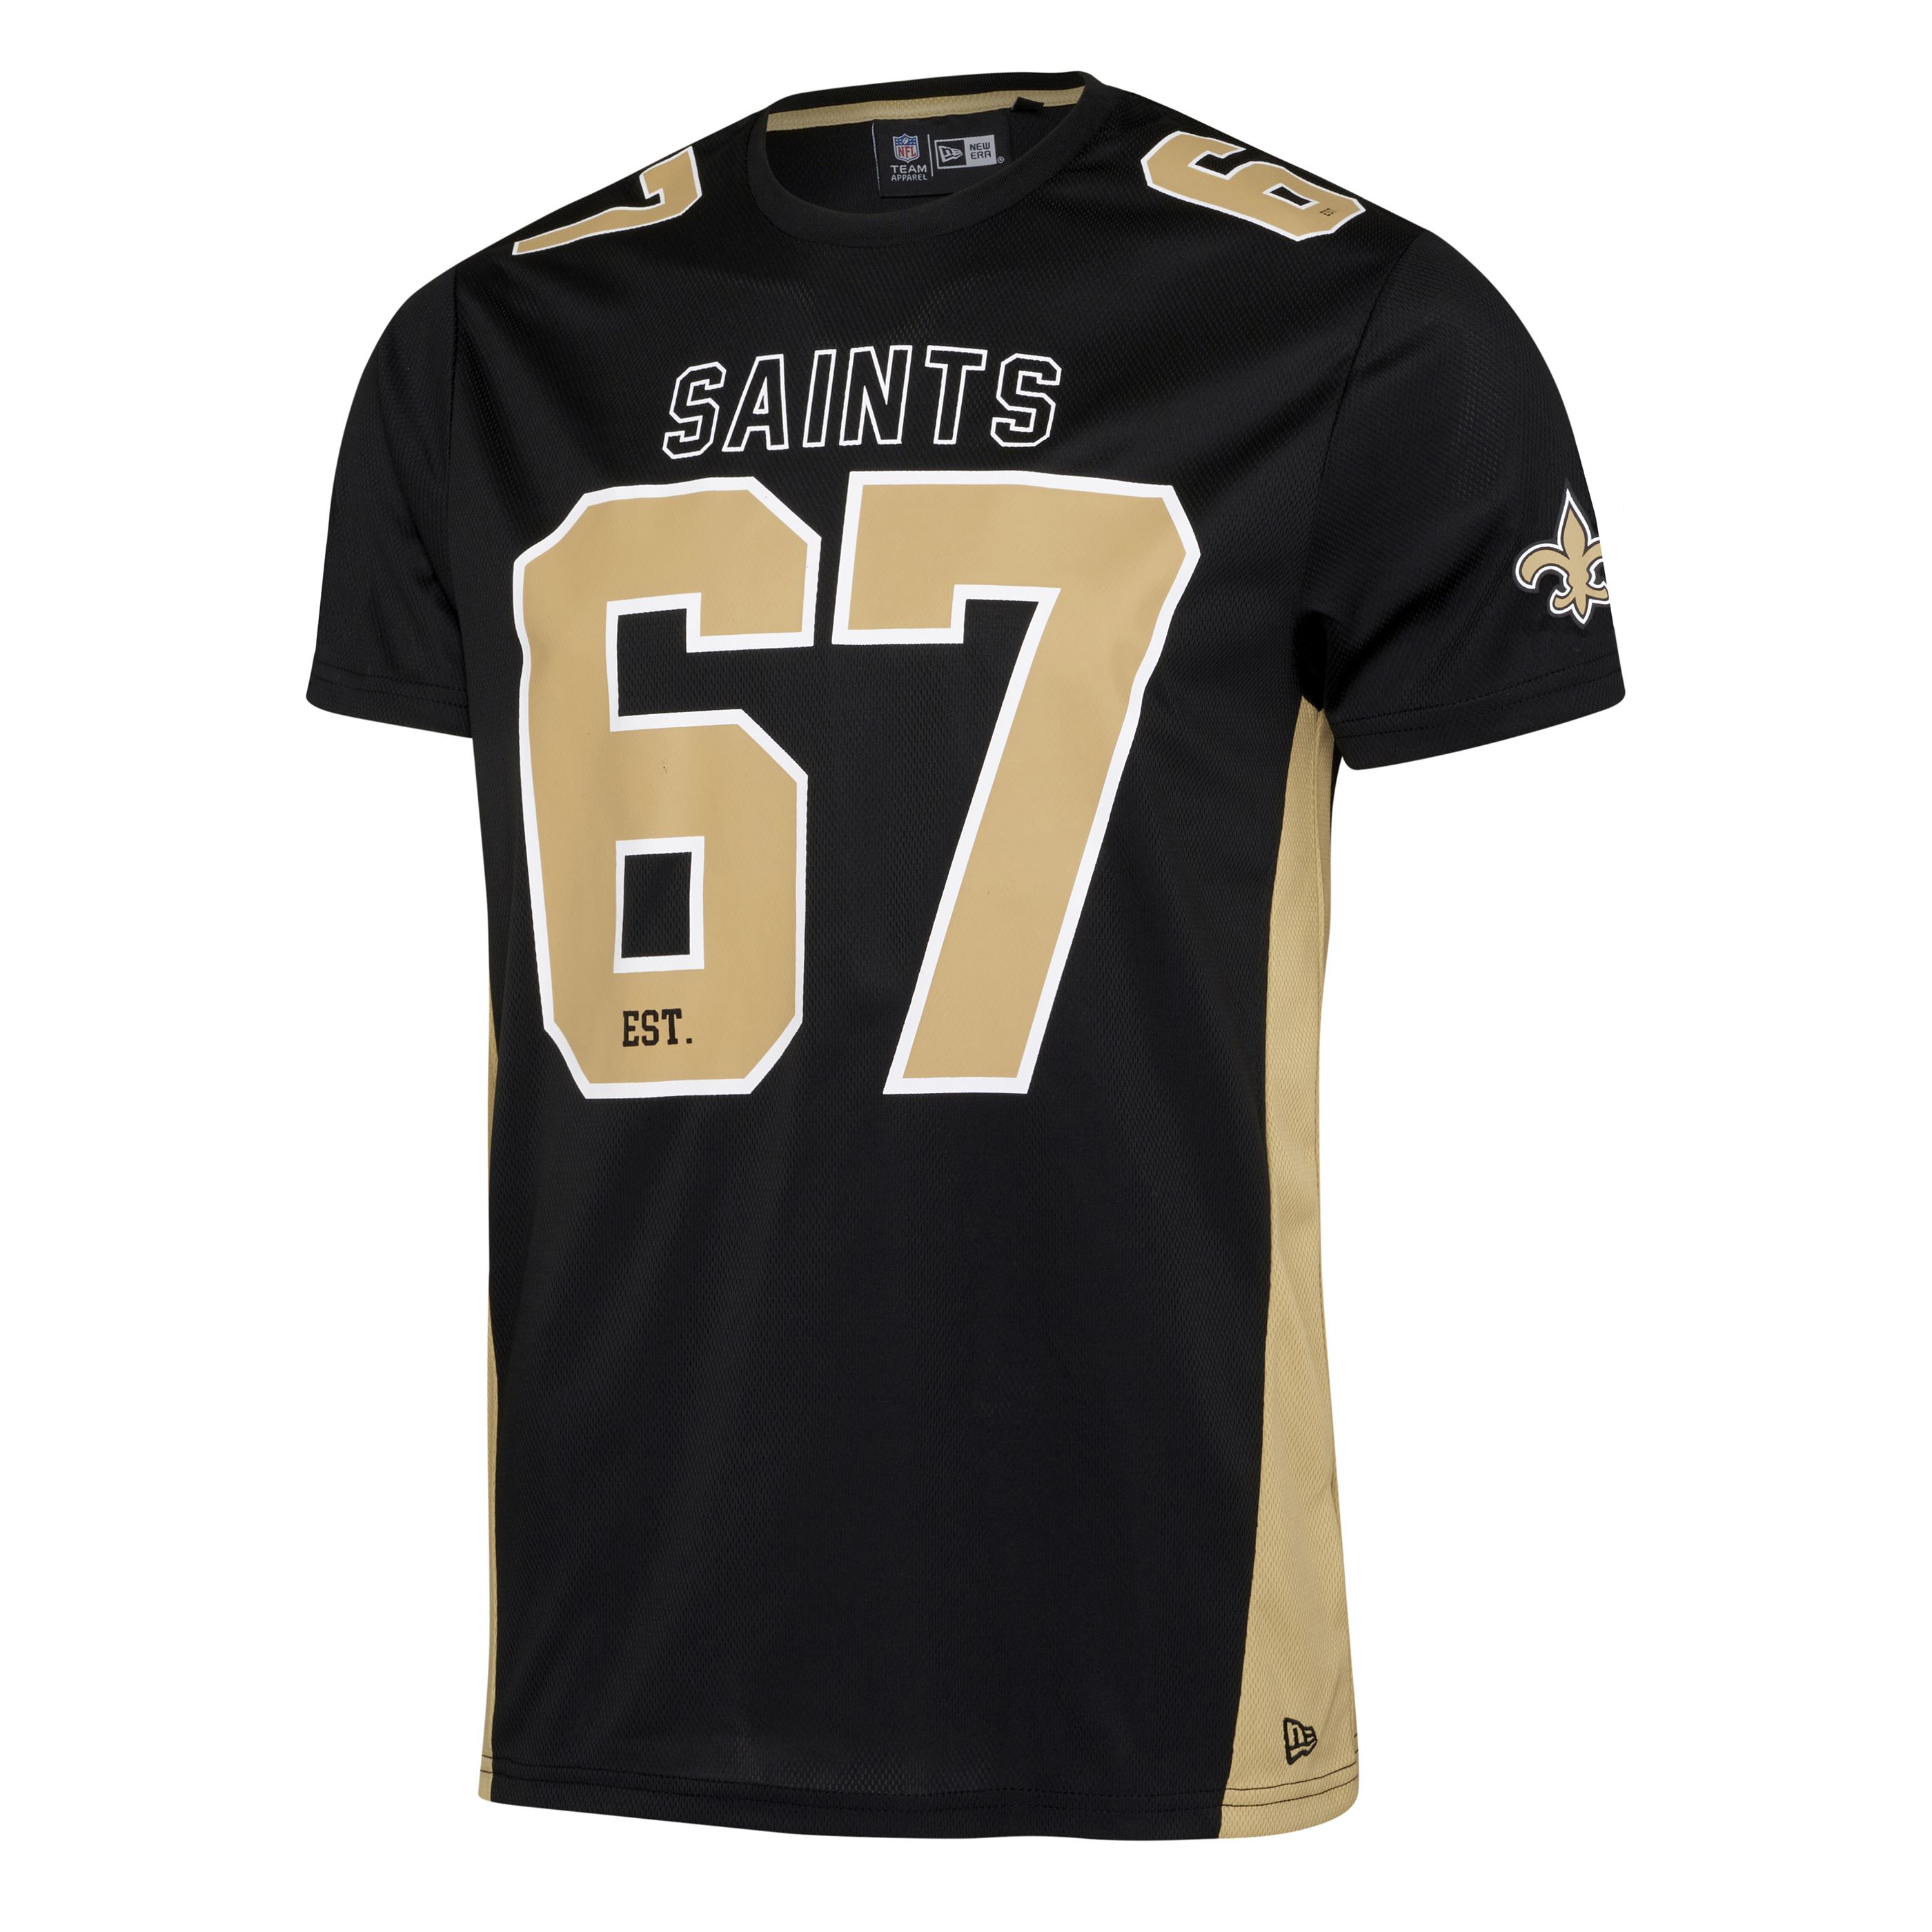 New Orleans Saints NFL Established Number Mesh Tee Black T-Shirt New Era